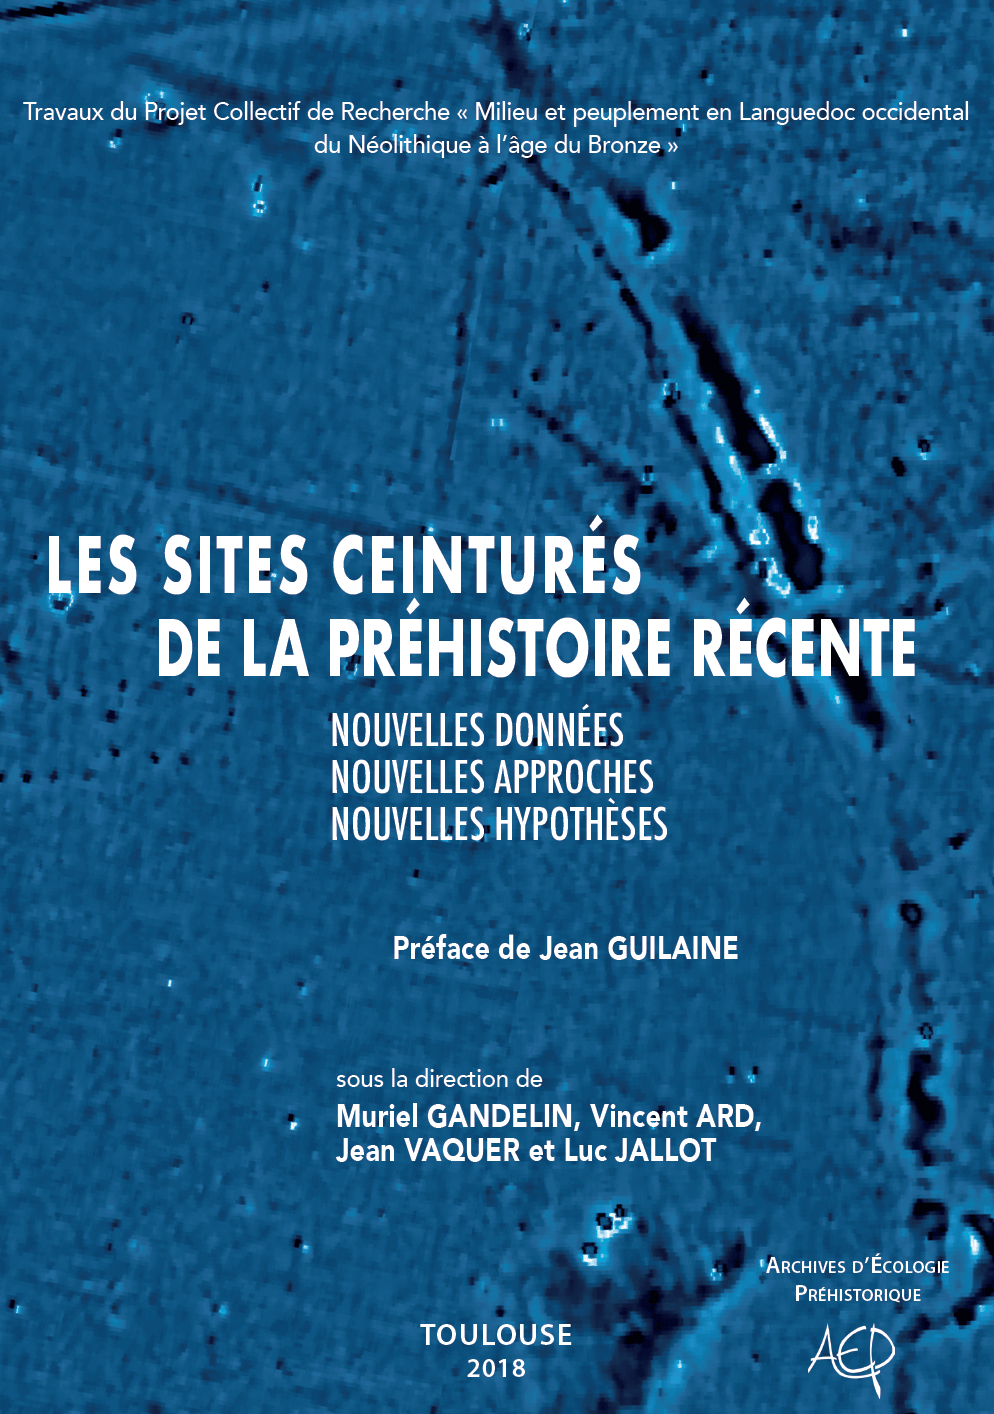 Les sites ceinturés de la préhistoire récente : nouvelles données, nouvelles approches, nouvelles hypothèses, 2018, 240 p.